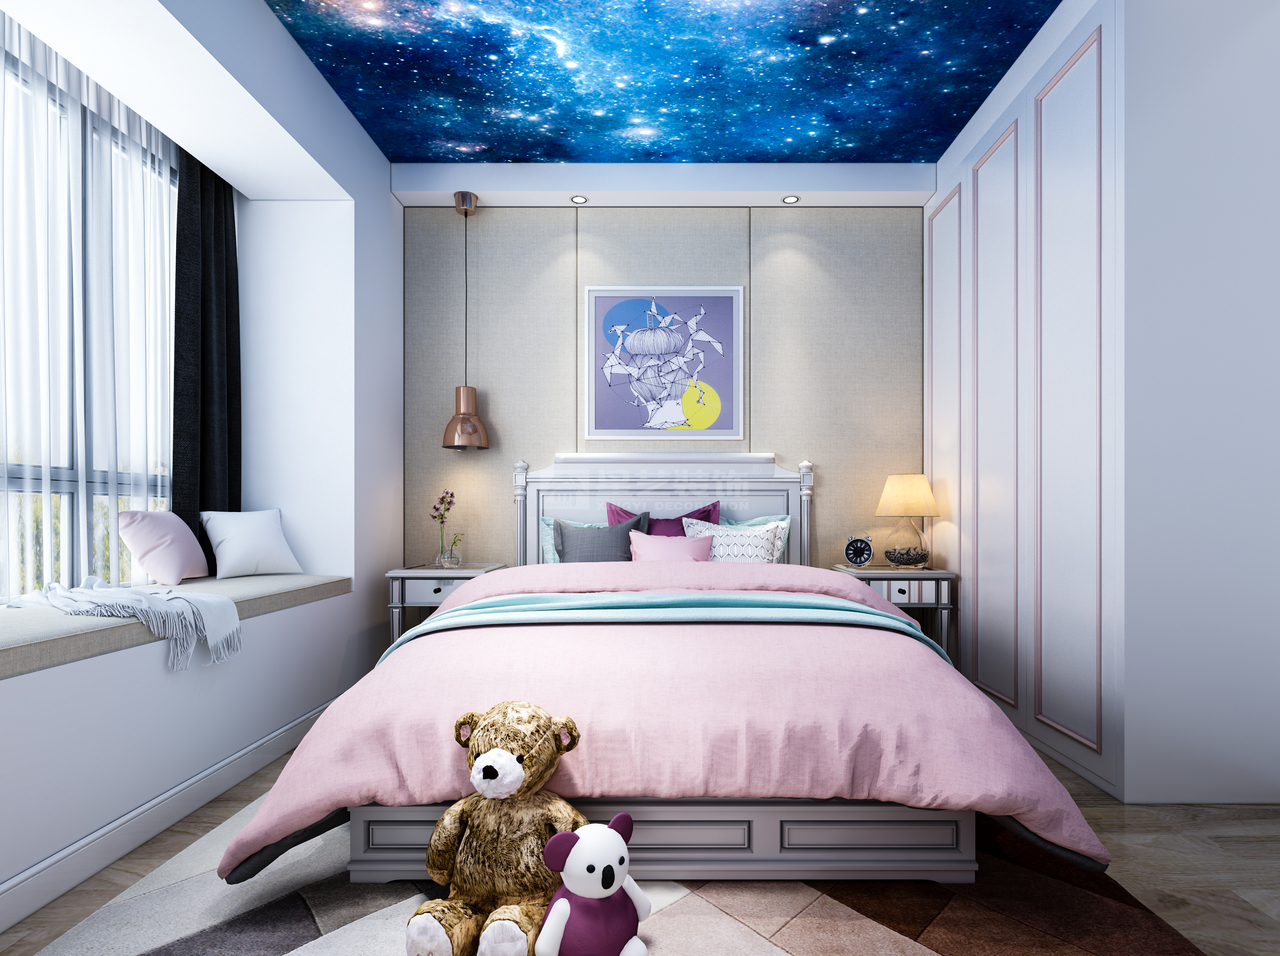 儿童房使用粉色床品和玩具熊，营造一个天真烂漫的空间氛围，蓝色星空的也为孩童时代无垠的梦幻加持一番！